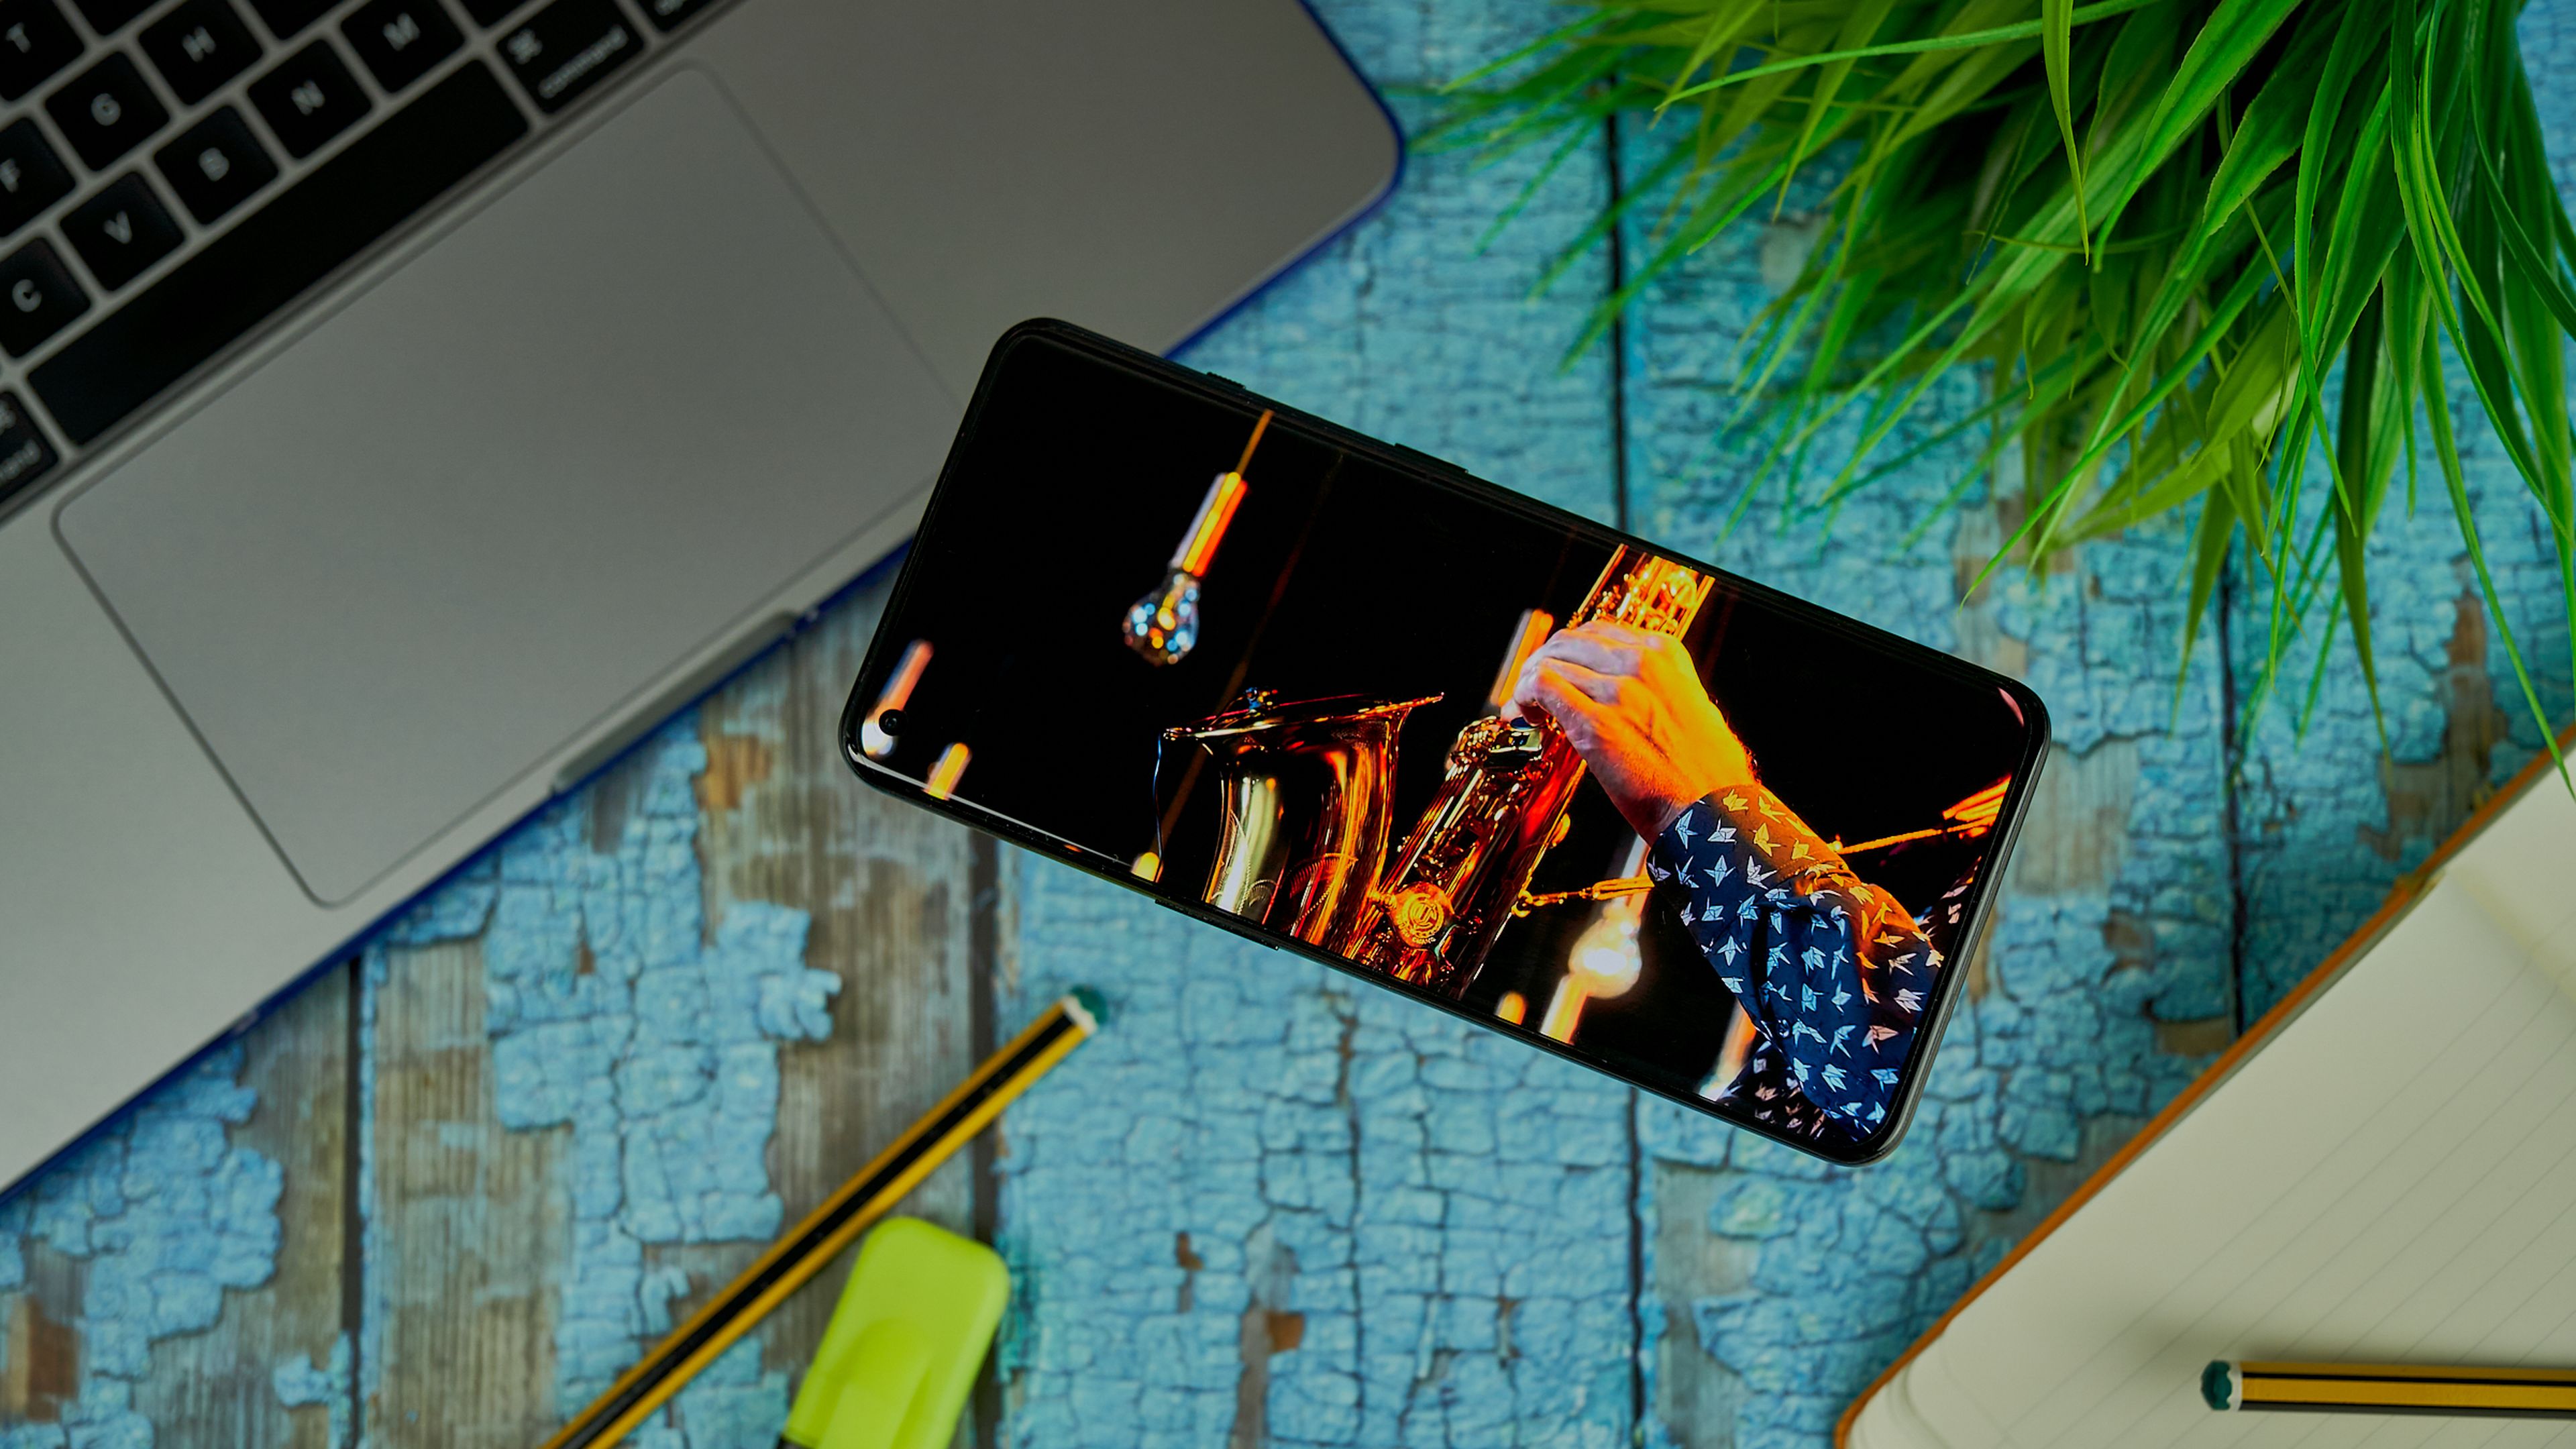 OnePlus 10 Pro, análisis y opinión